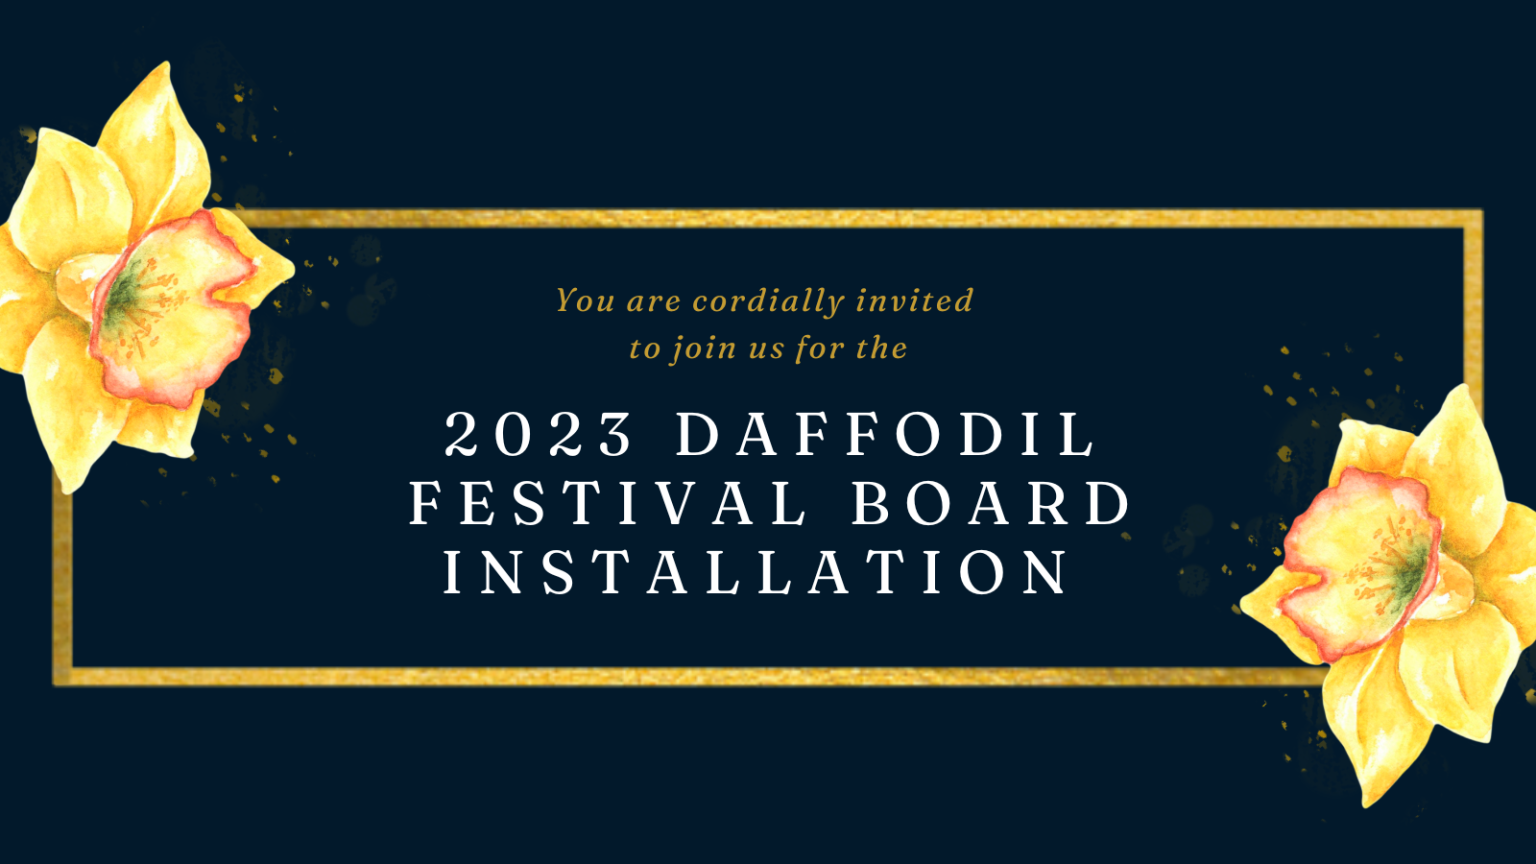 Daffodil Festival 2023 Board Installation The Daffodil Festival